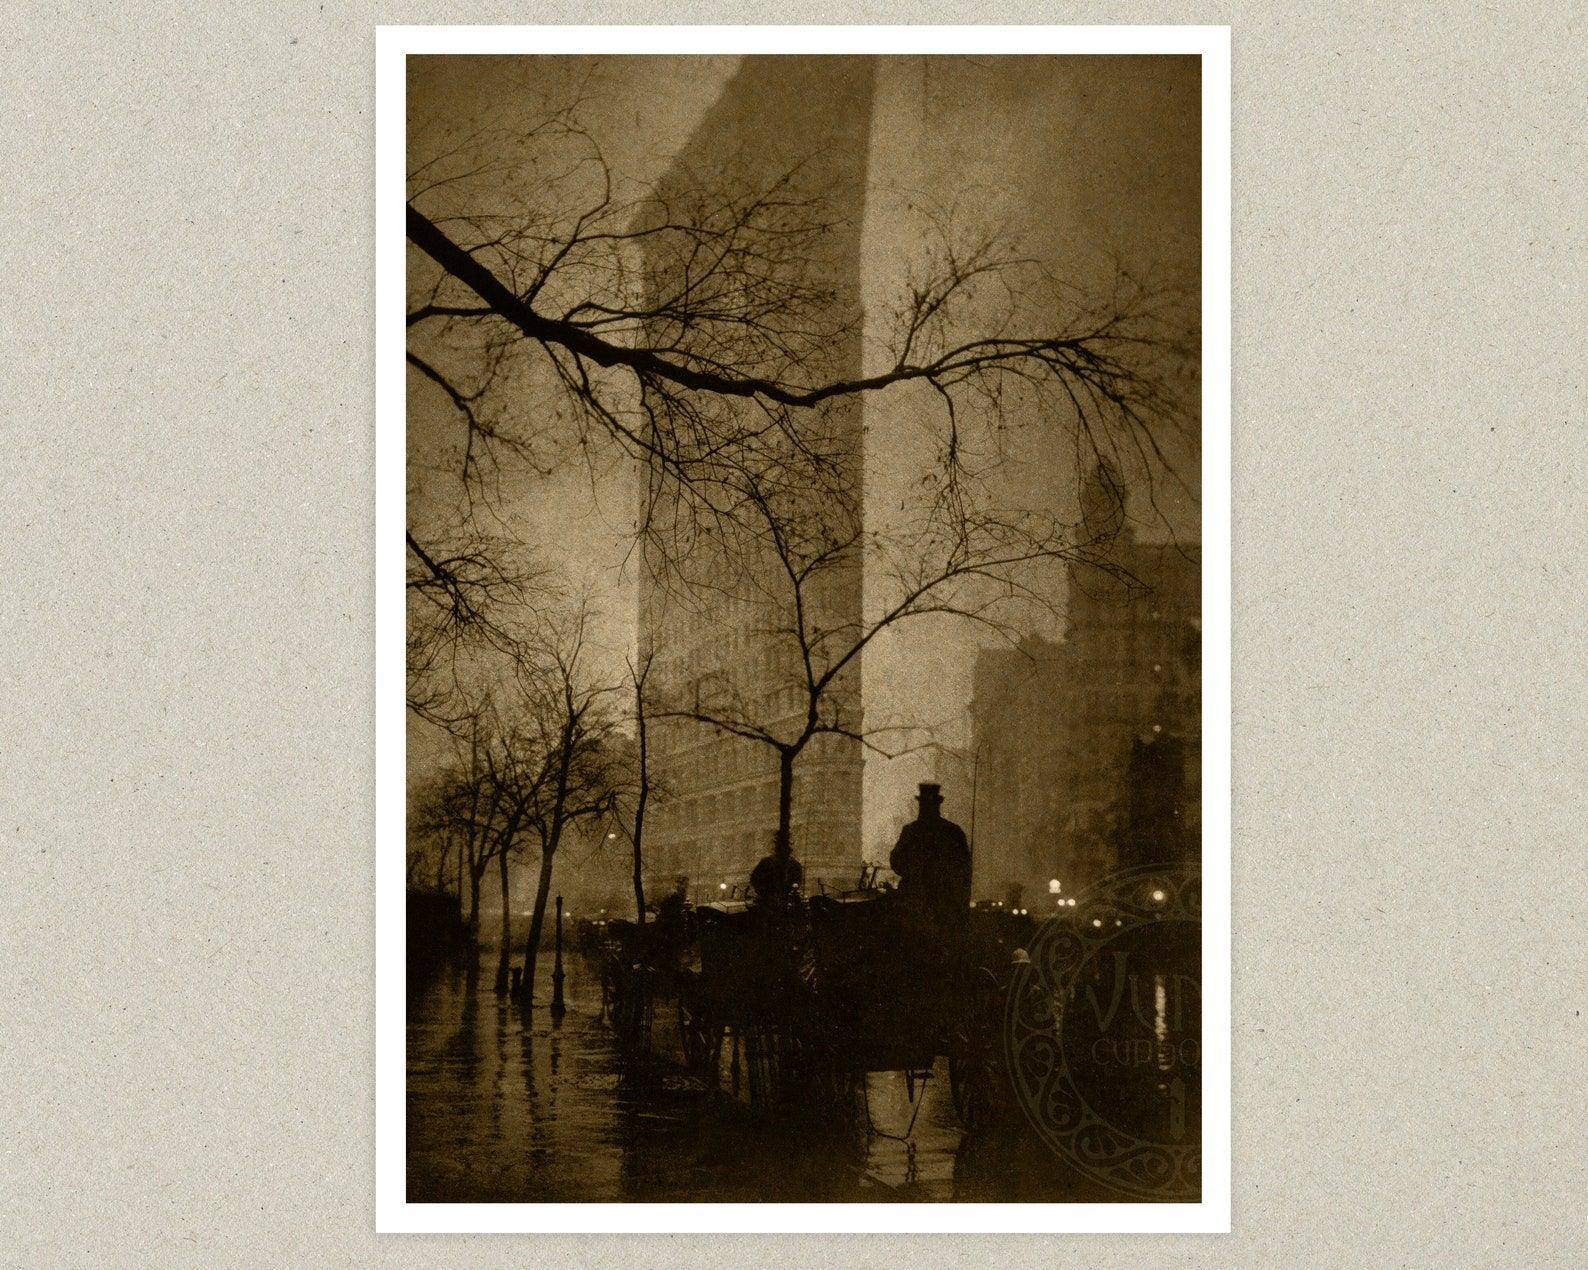 Edward Steichen "The Flatiron Building" (c.1904) Vintage Photograph - Mabon Gallery